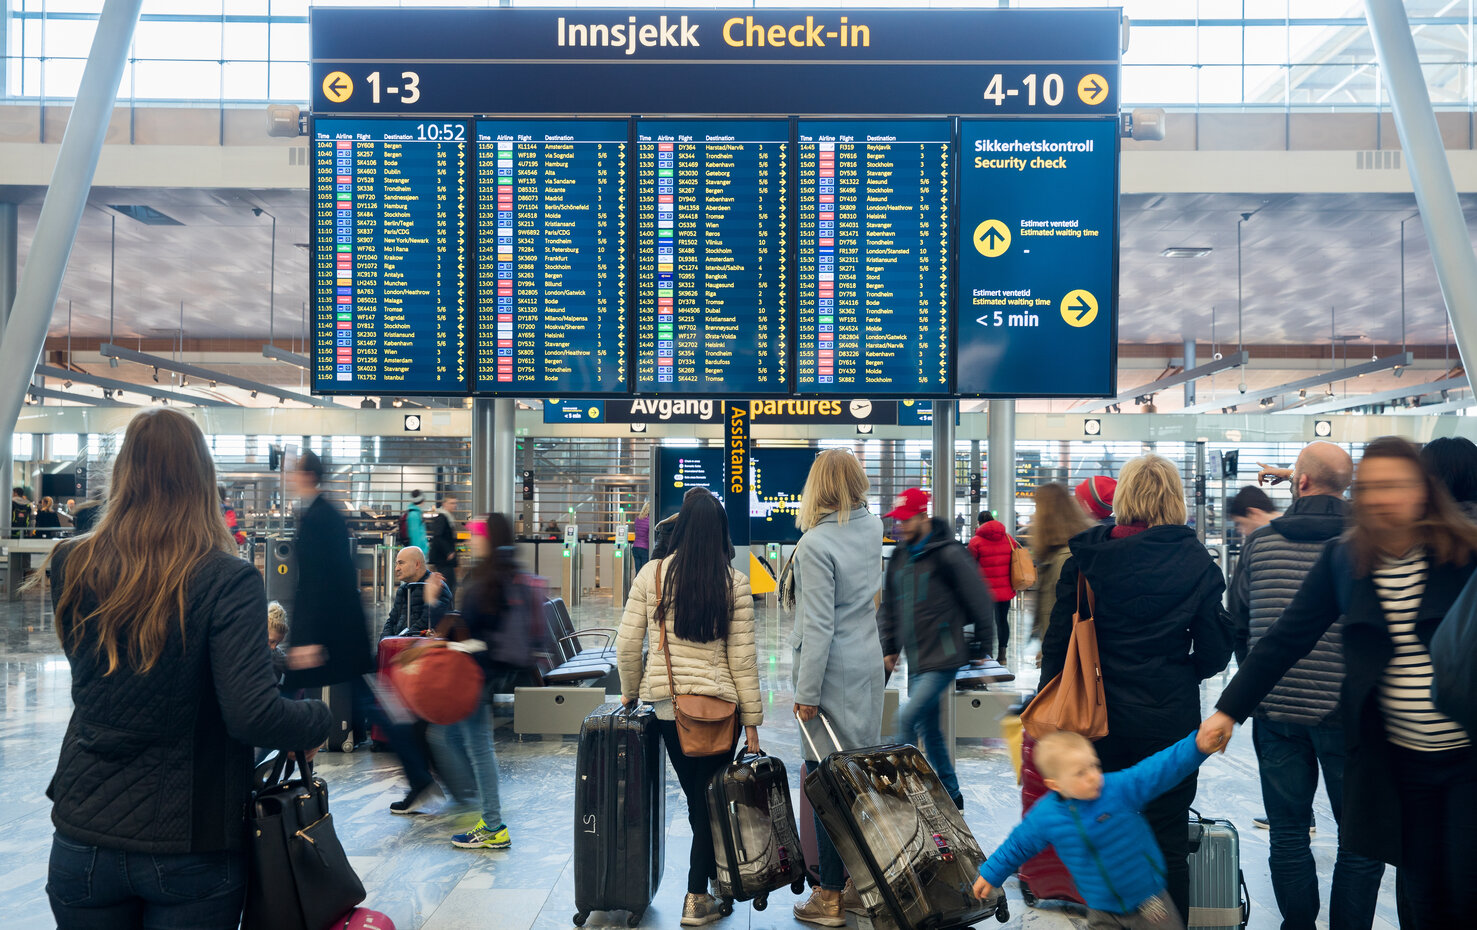 Norweskie lotniska w Oslo i Bergen mogą zostać dotknięte strajkiem | localmarket.no